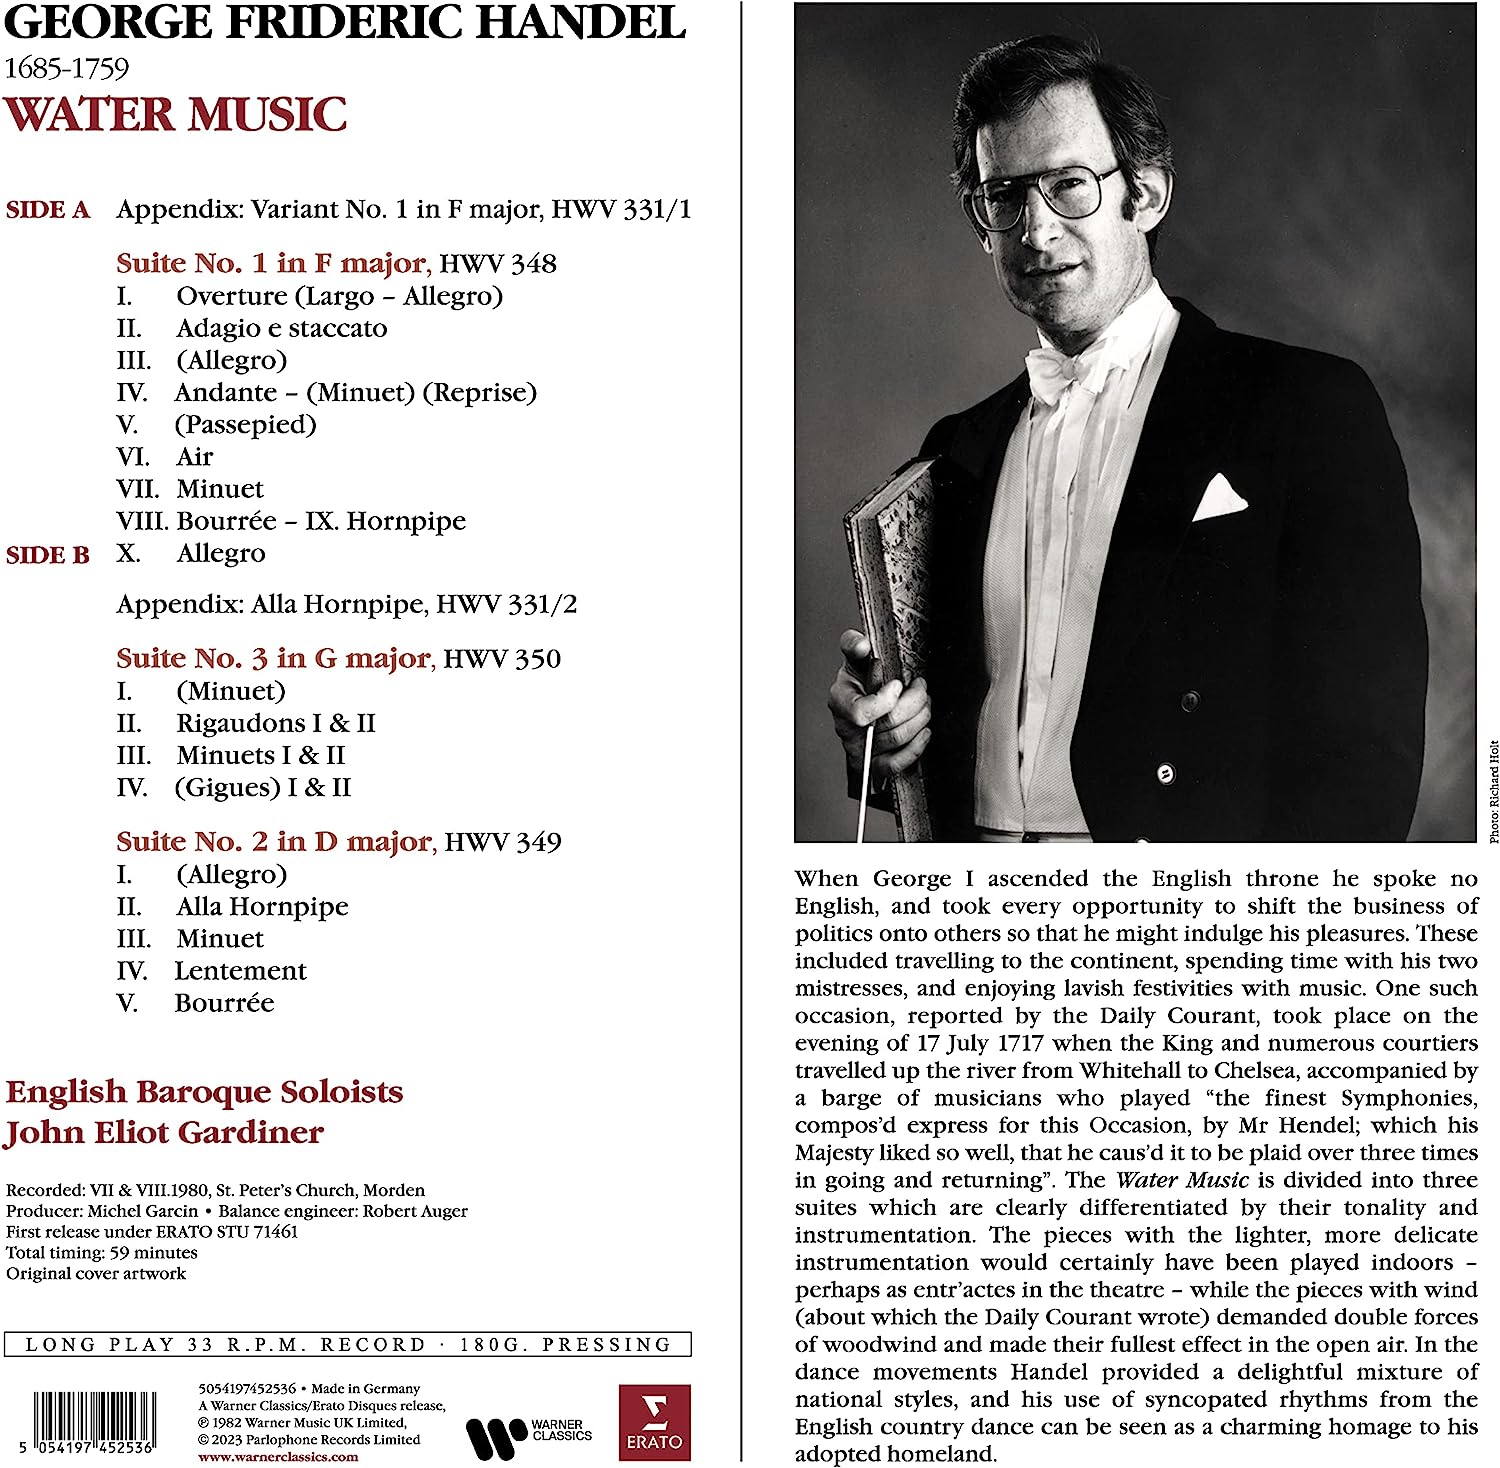 Handel: Water Music - Vinyl | English Baroque Soloists, John Eliot Gardiner